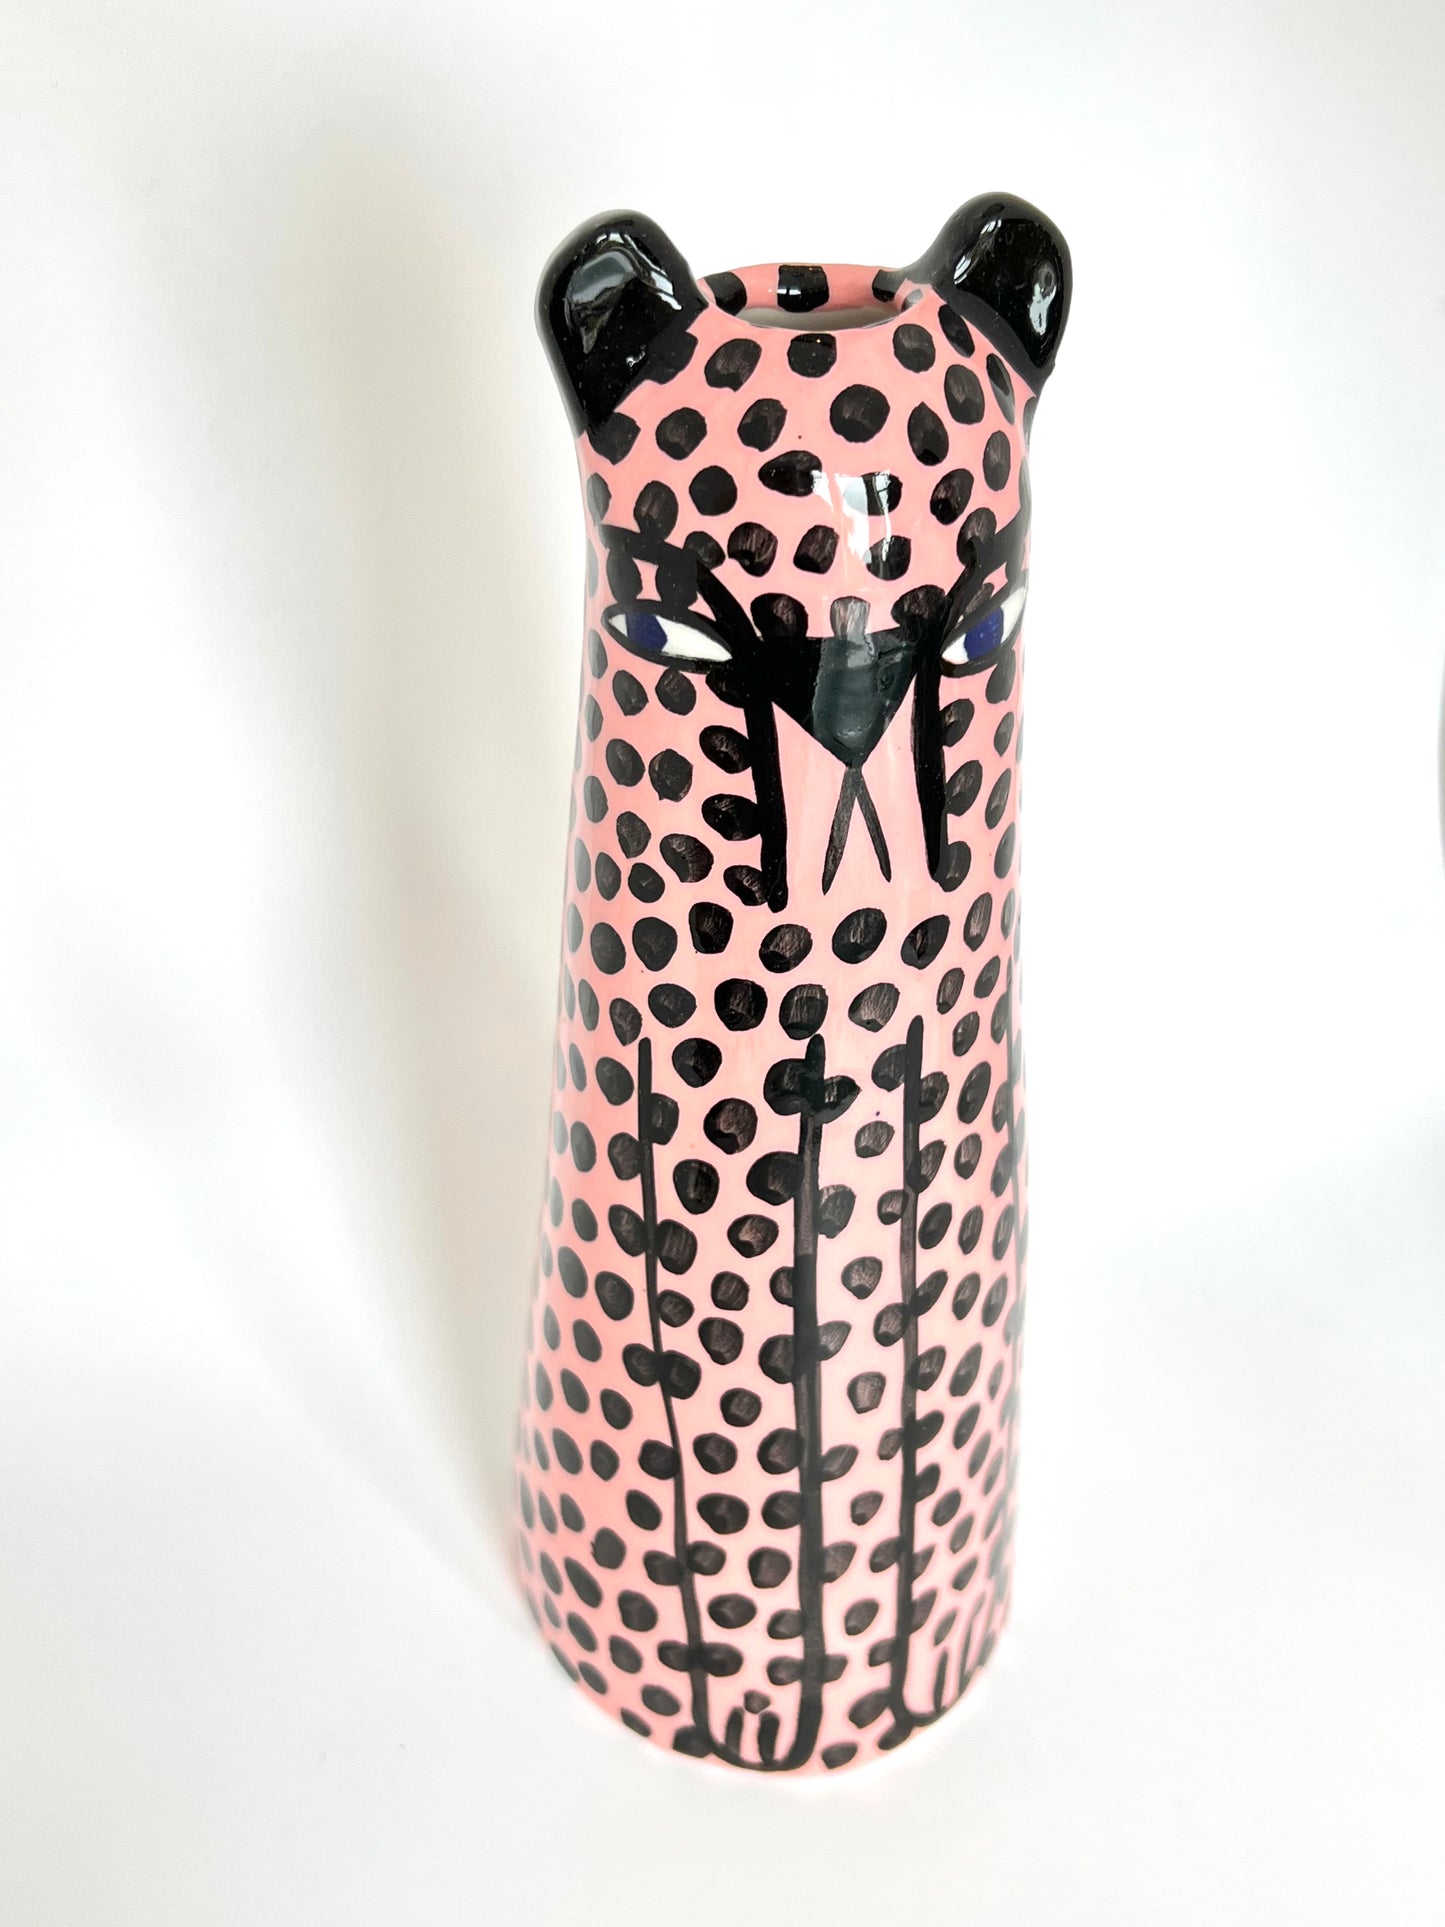 Pink Cheetah Vase by Studio Soph